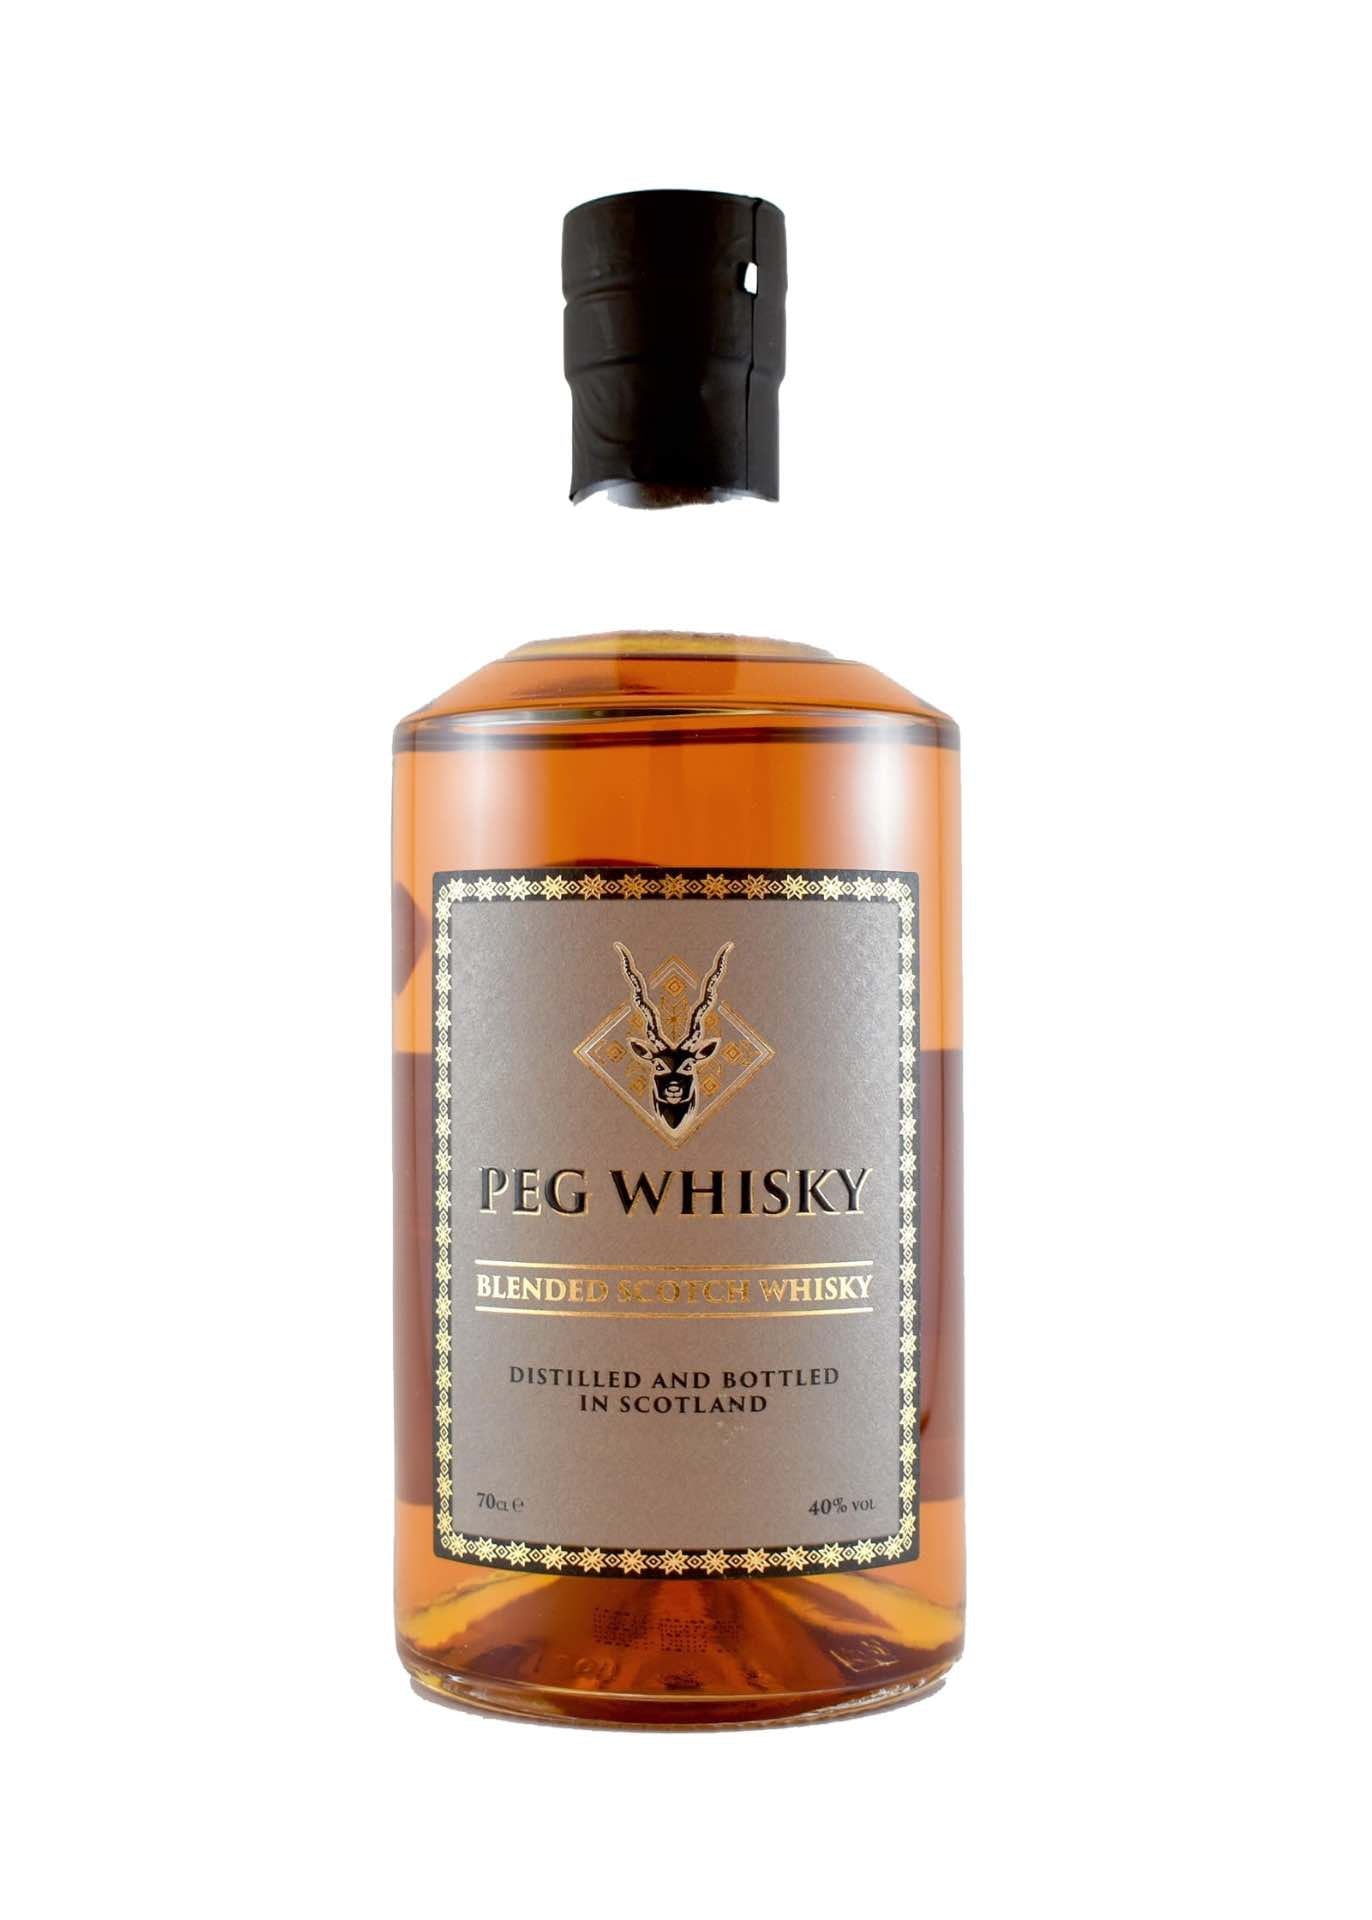 Peg Whisky Blended Scotch